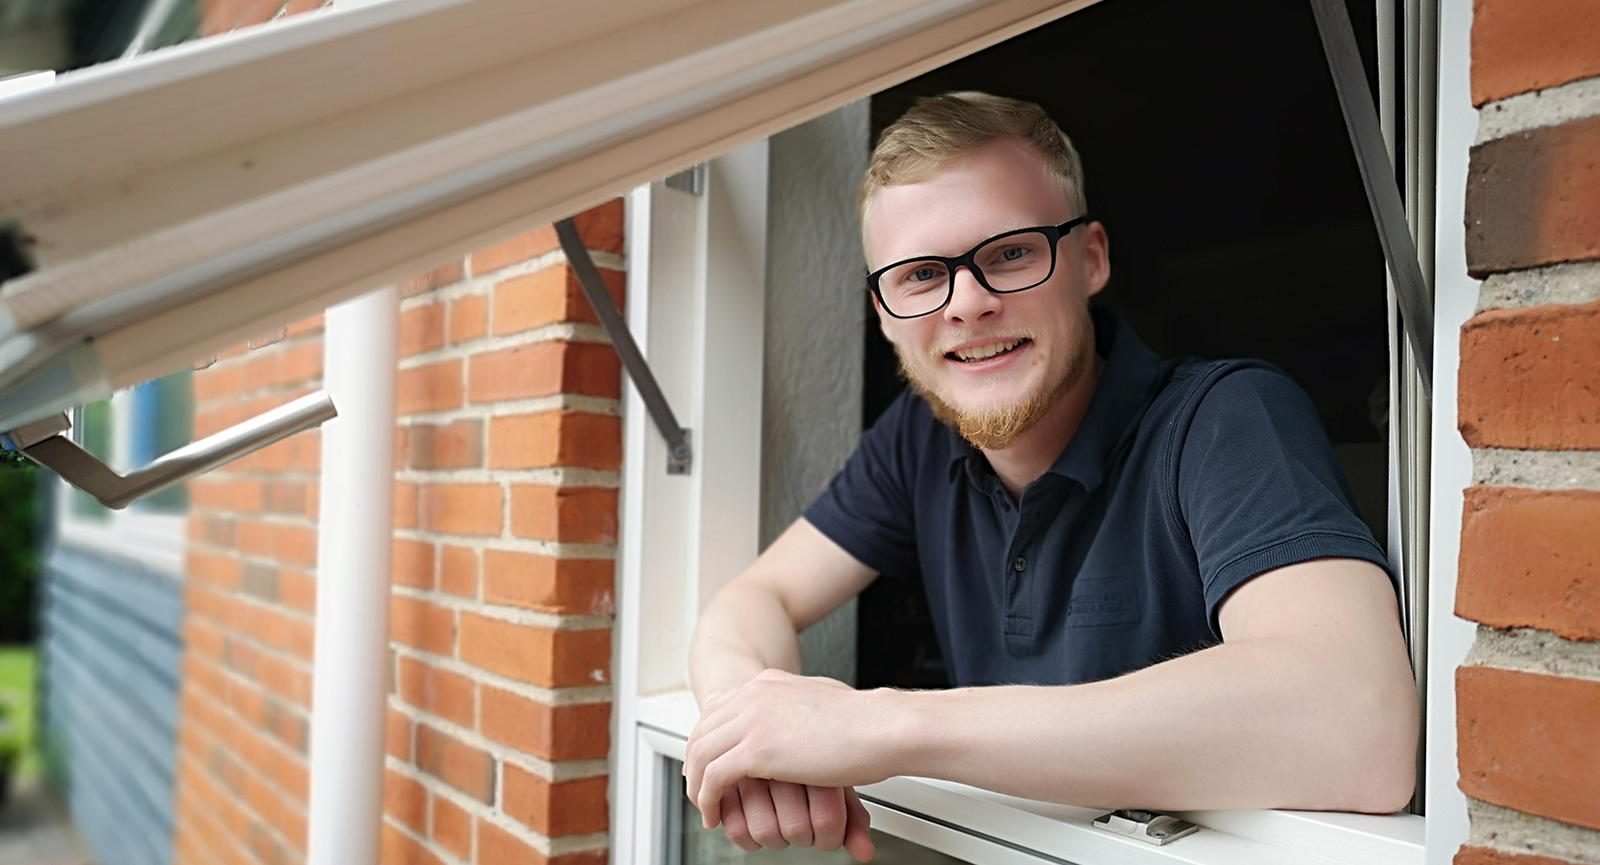 Nyuddannet automationsteknolog Rasmus Stampe Laursen læner sig ud ad vinduet på et rødt murstenshus, mens han hviler albuerne på vindueskarmen og smiler til kameraet. 